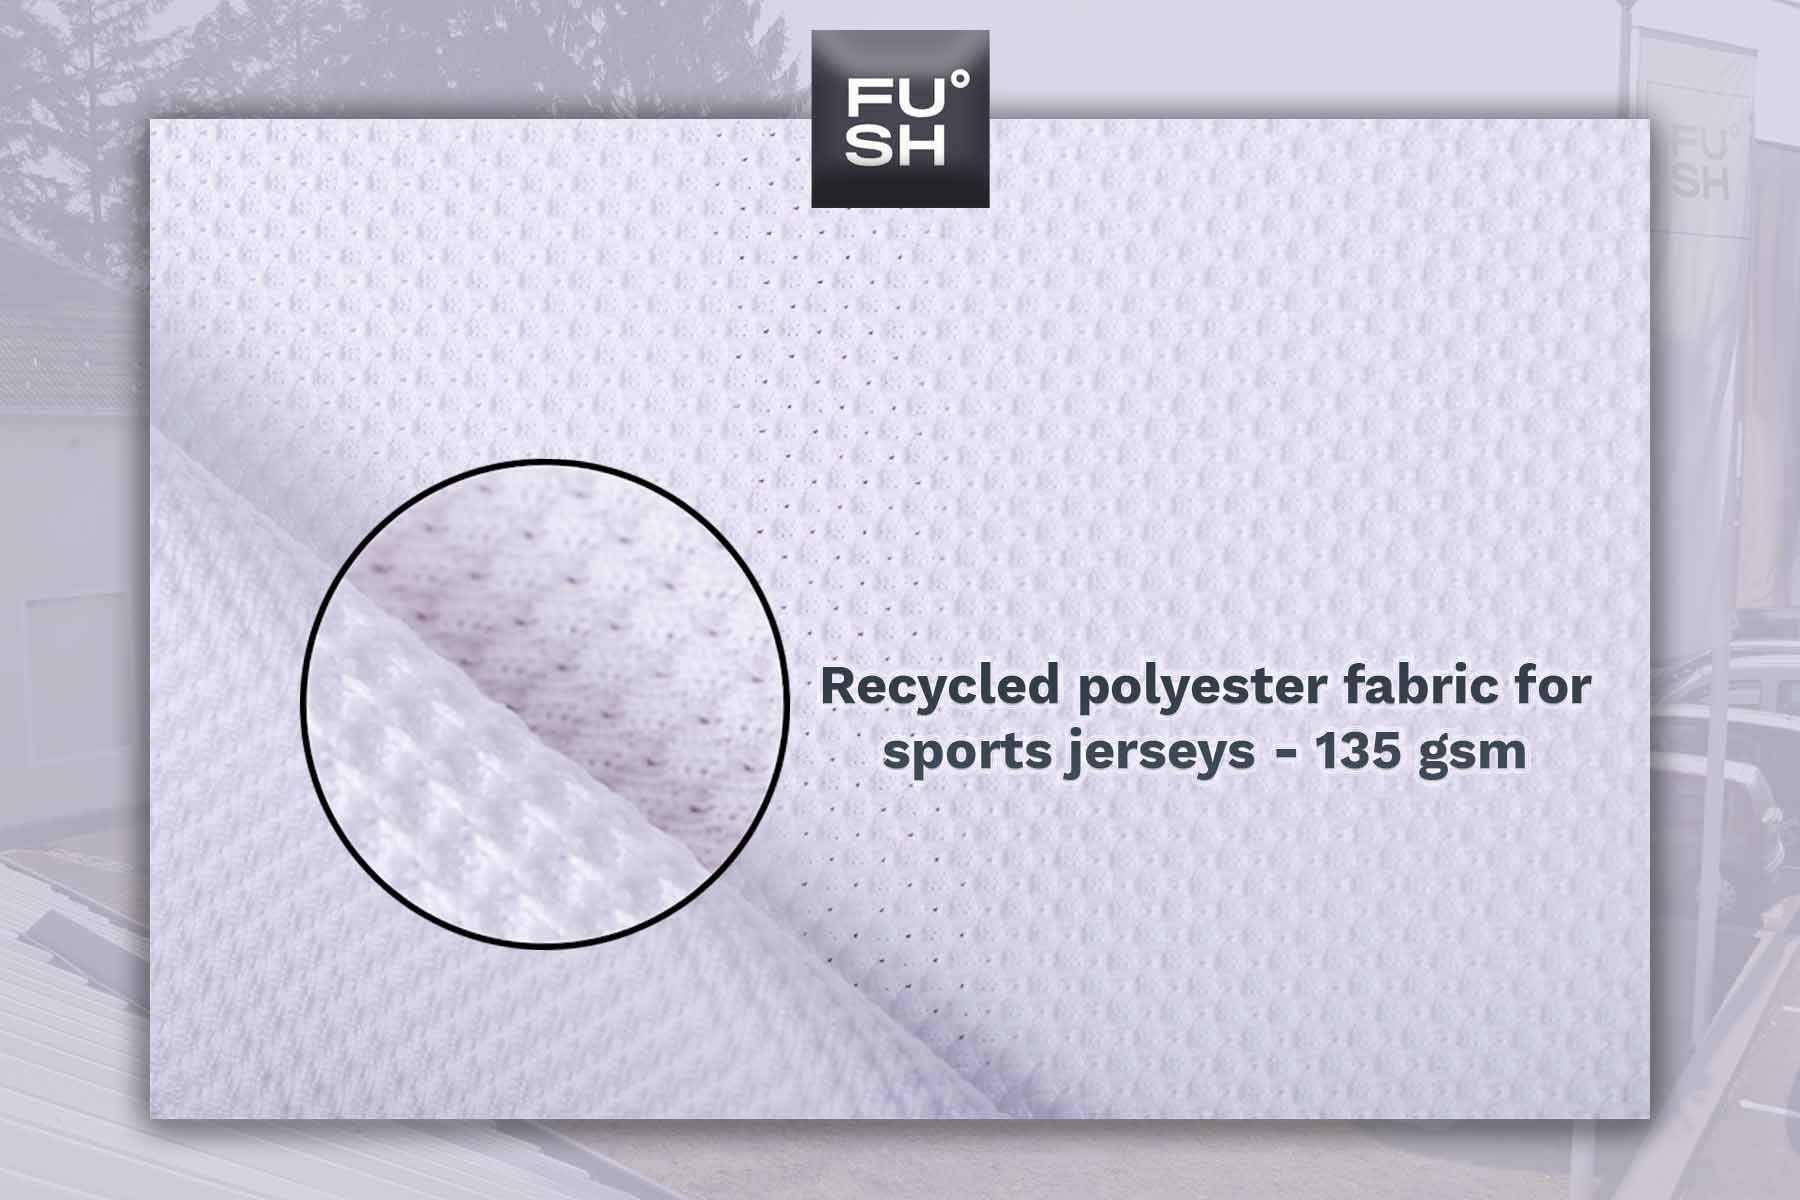 Custom fabrics for sports jerseys